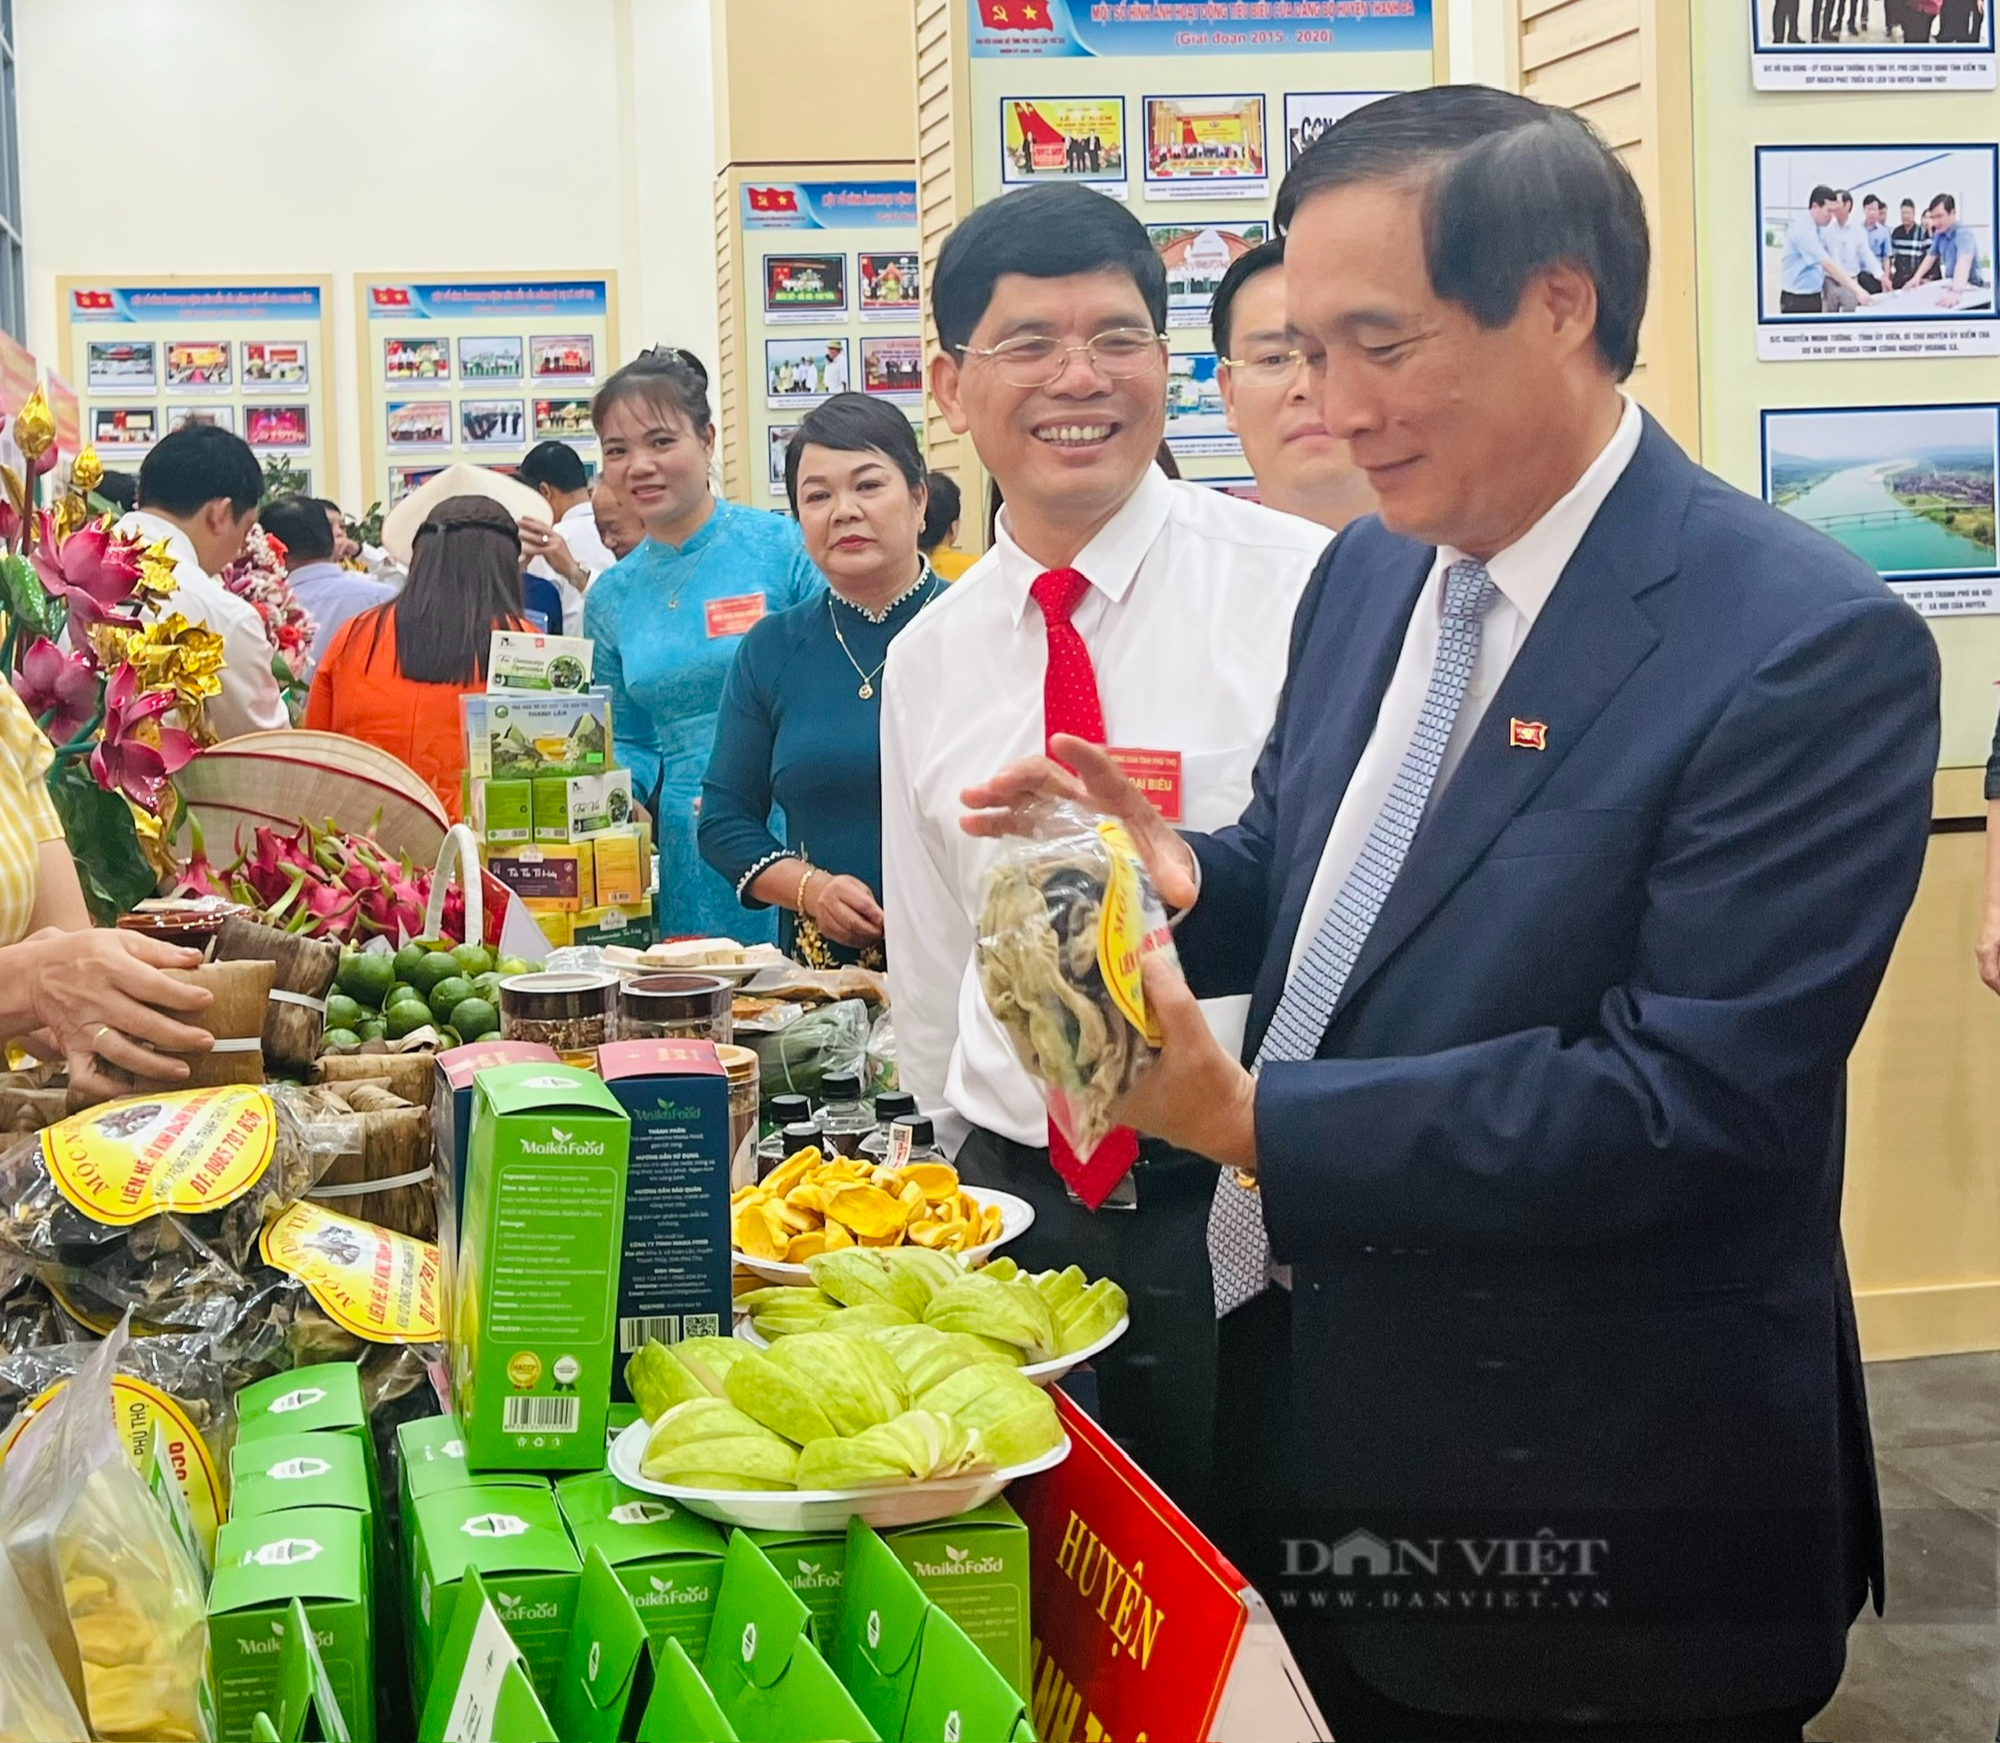 Đại biểu “say” đặc sản OCOP chè xanh, gà cựa, rau sắn, mỳ gạo tại Đại hội Nông dân tỉnh Phú Thọ  - Ảnh 3.